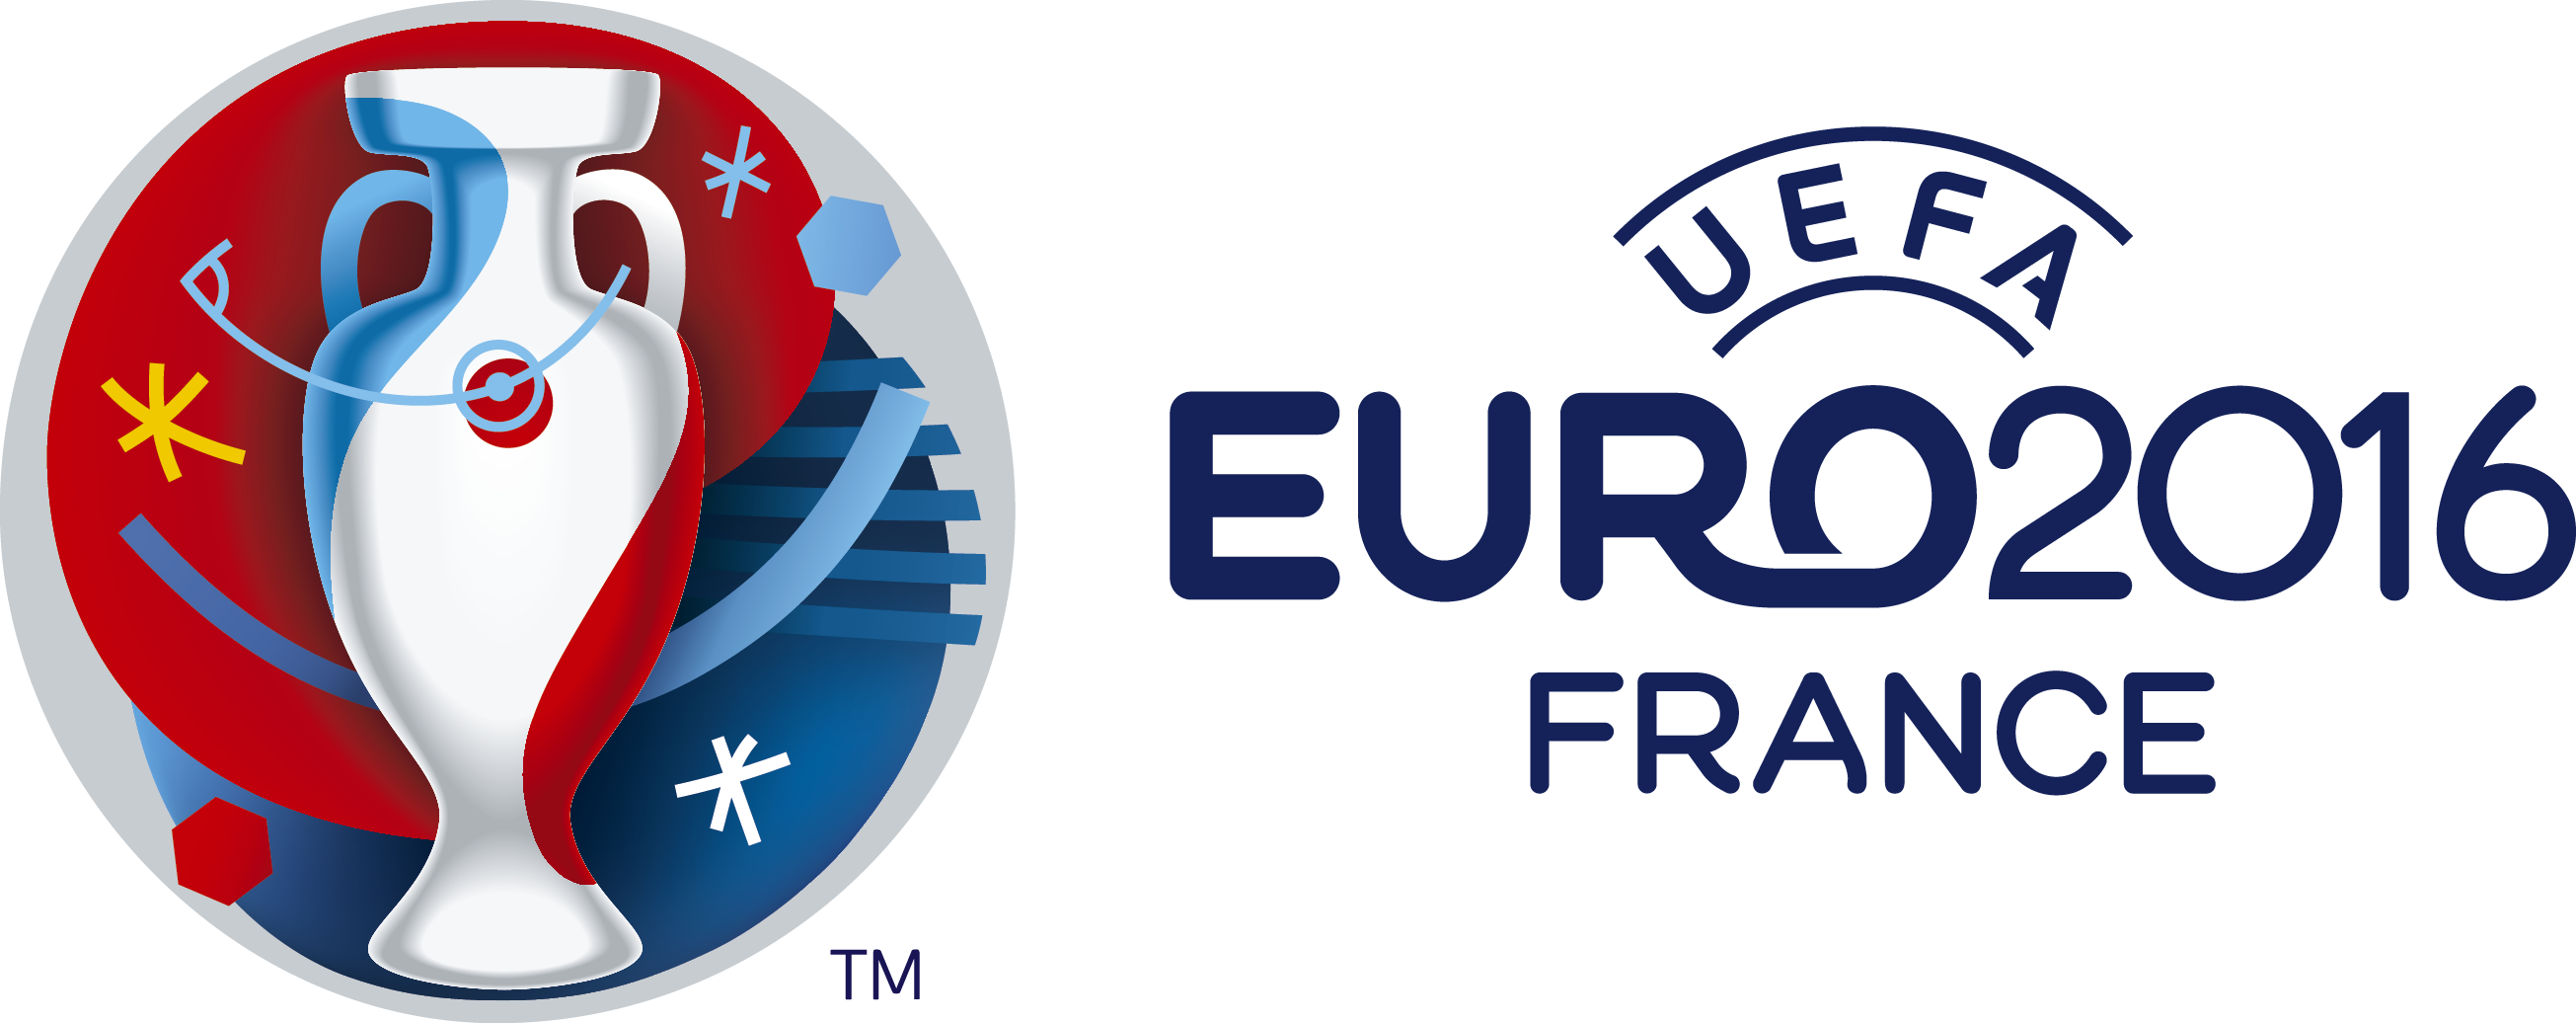 Logo2016 Lnd Full Onwht - Euros 2016 (2610x1036)